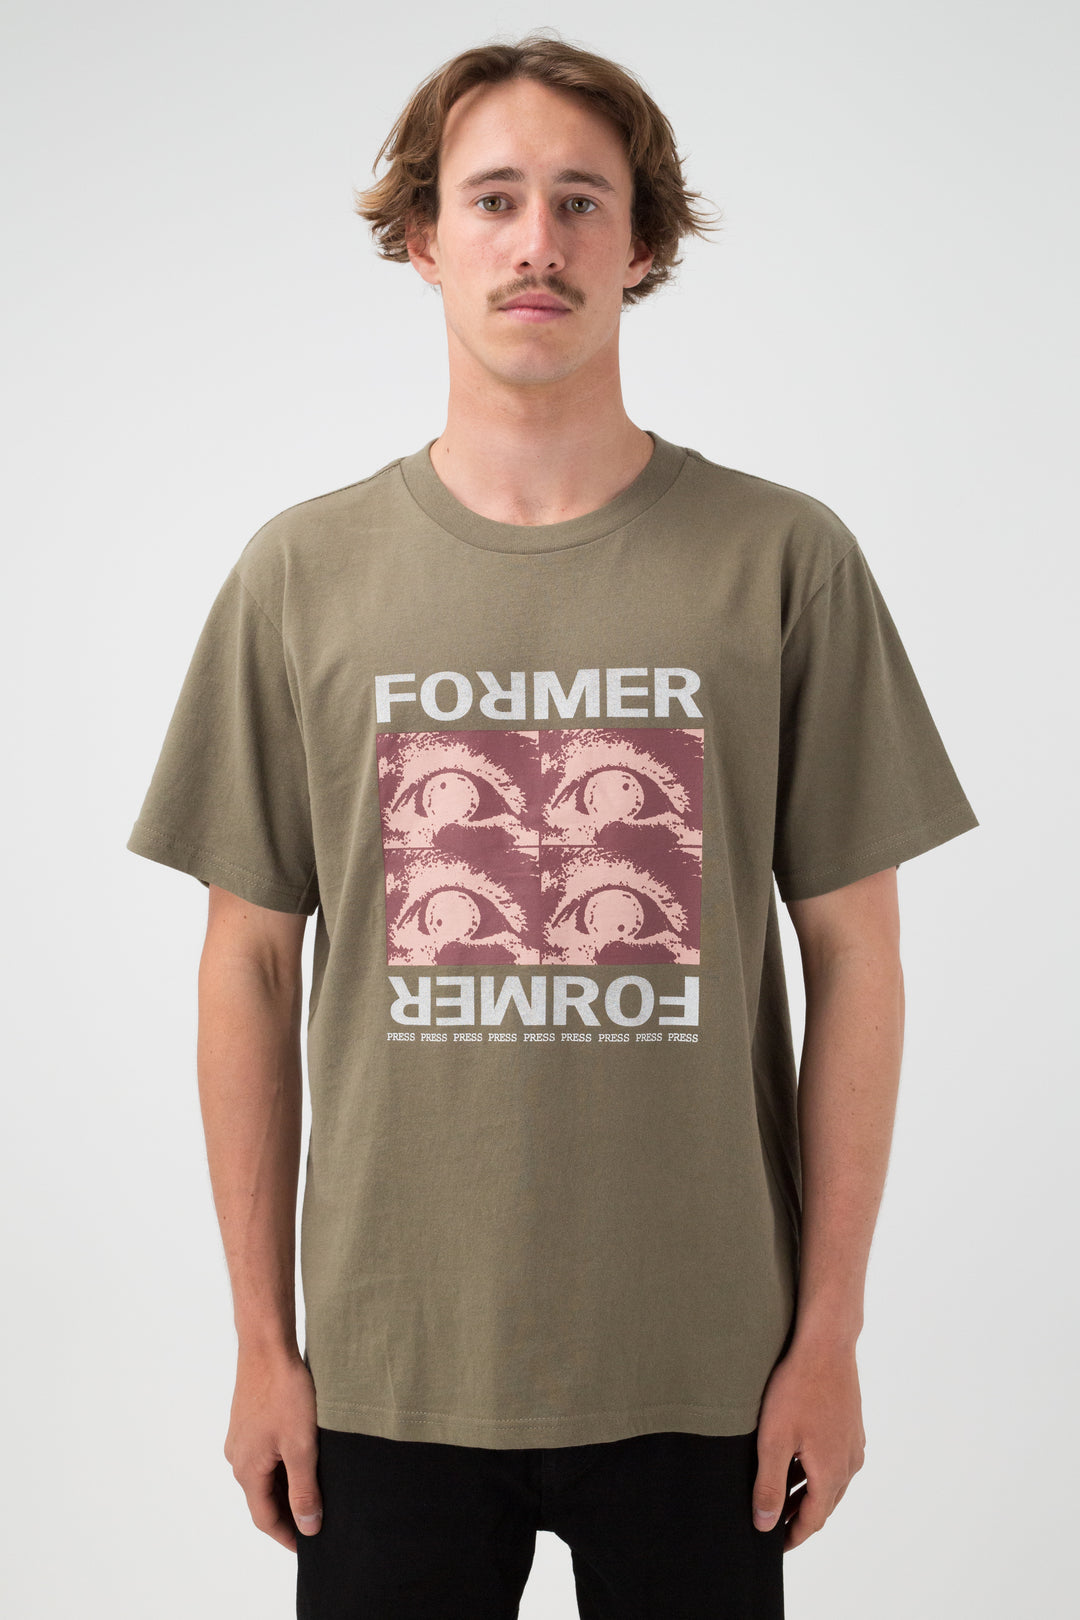 FORMER Replica T-Shirt